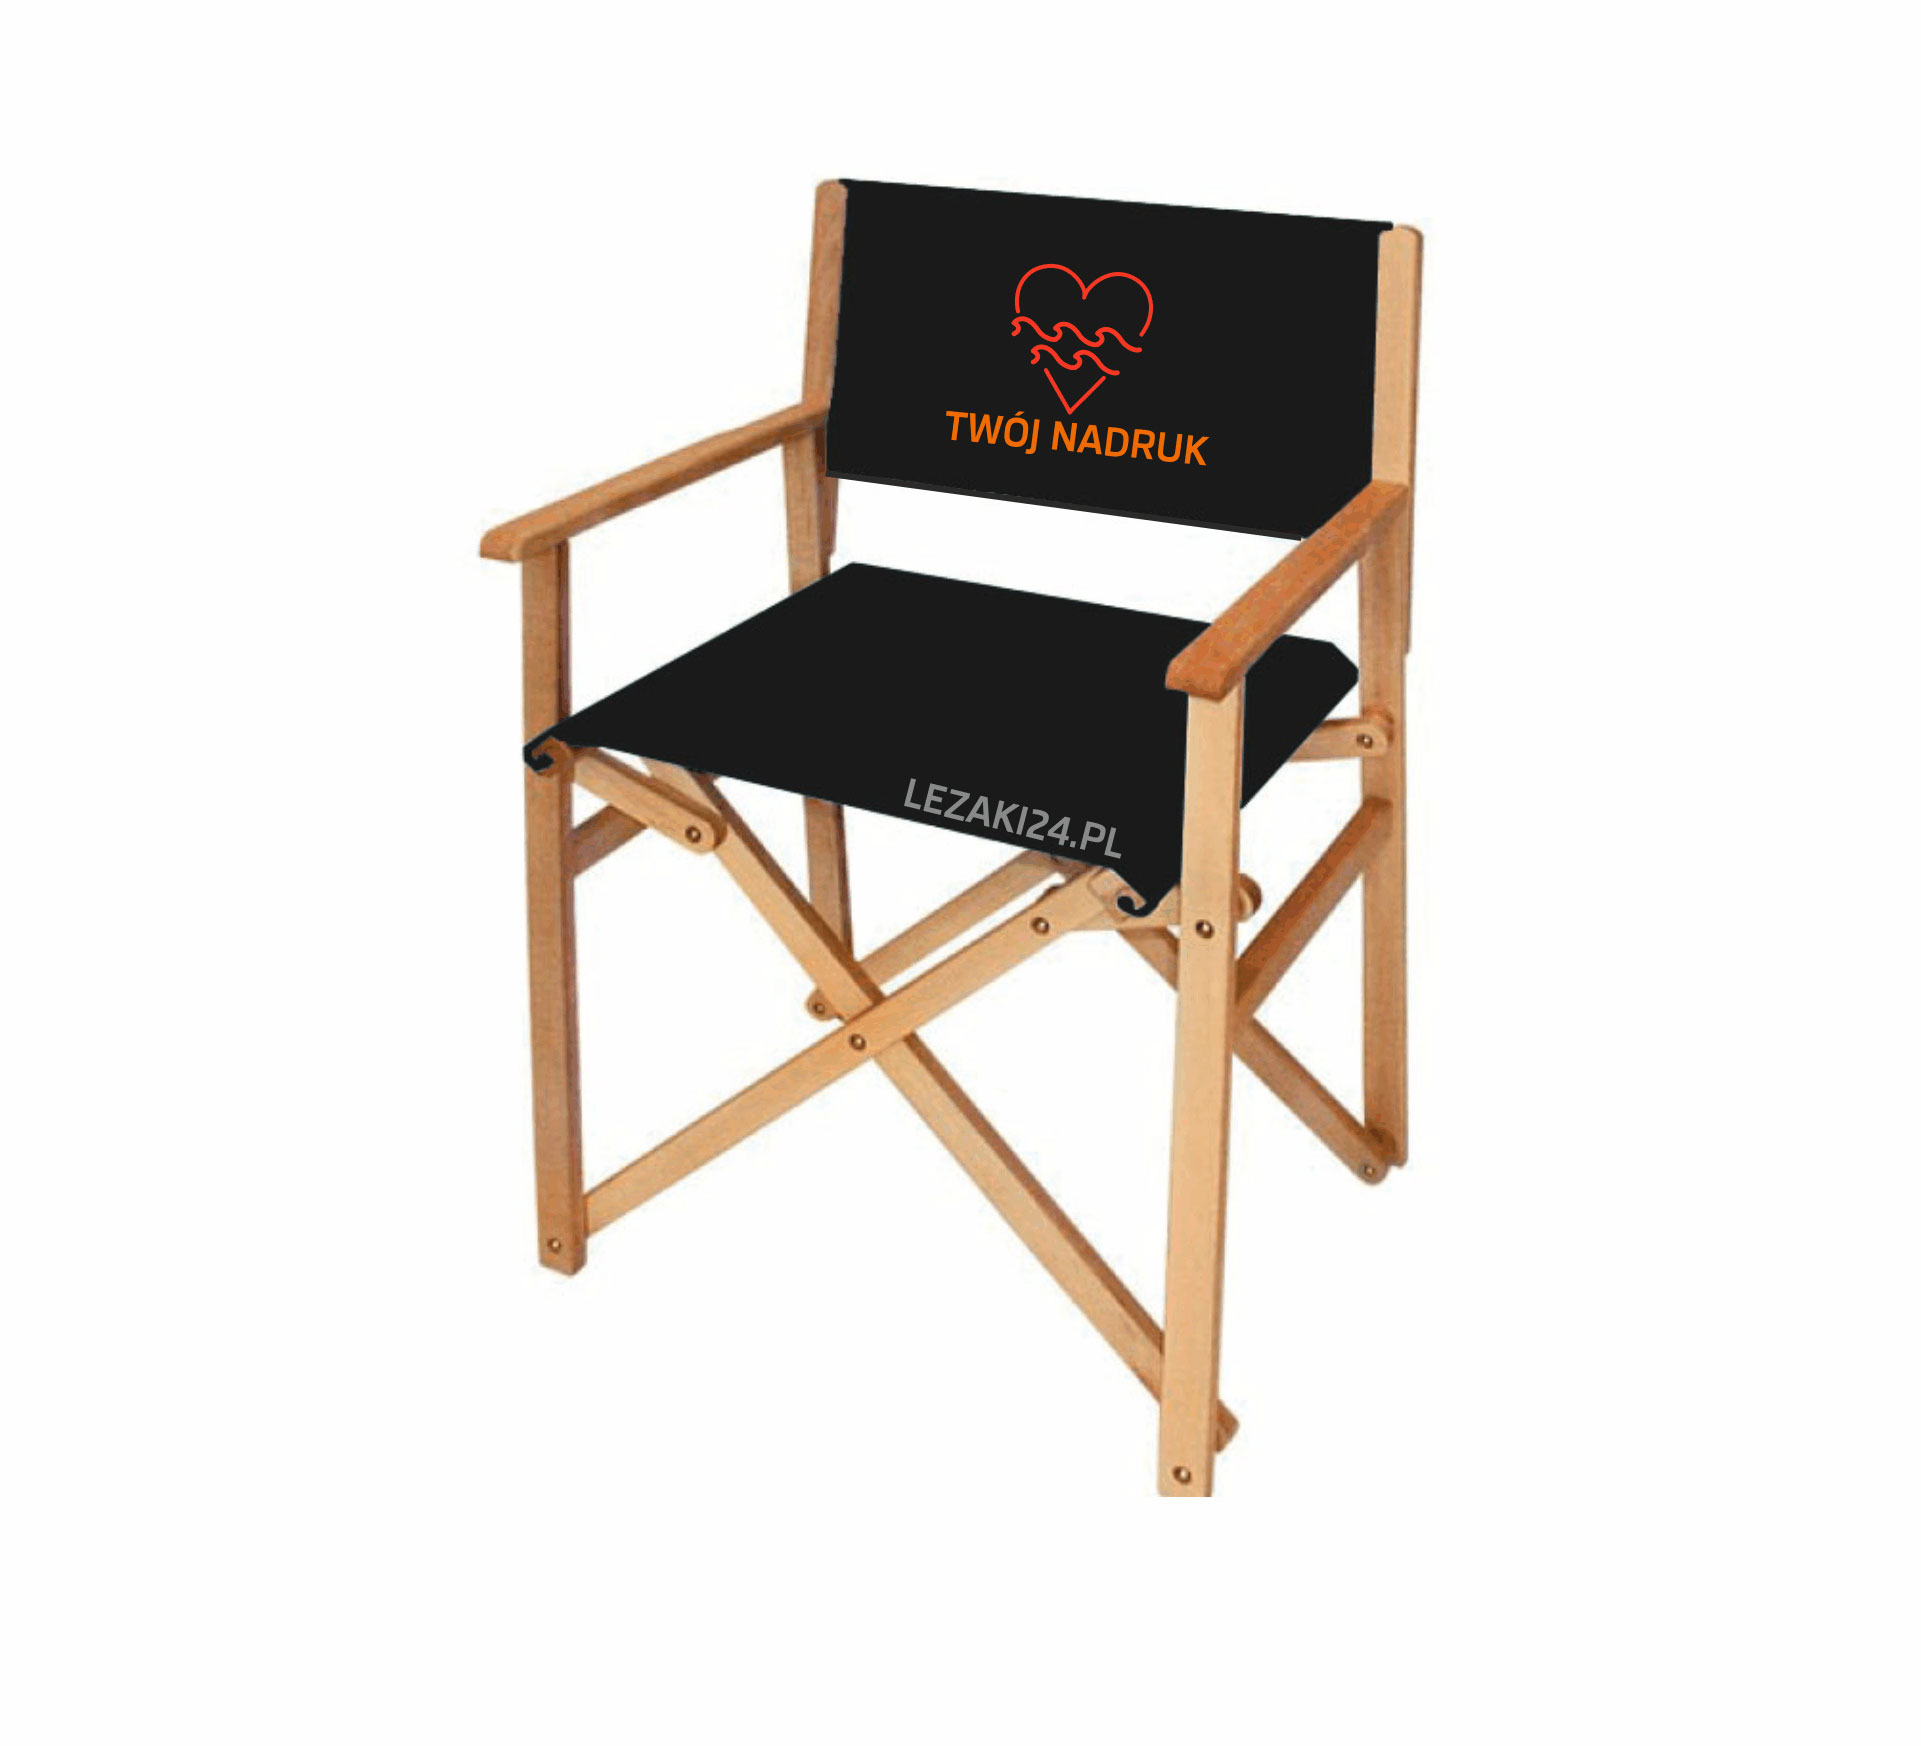 krzeselko rezyserskie z logo